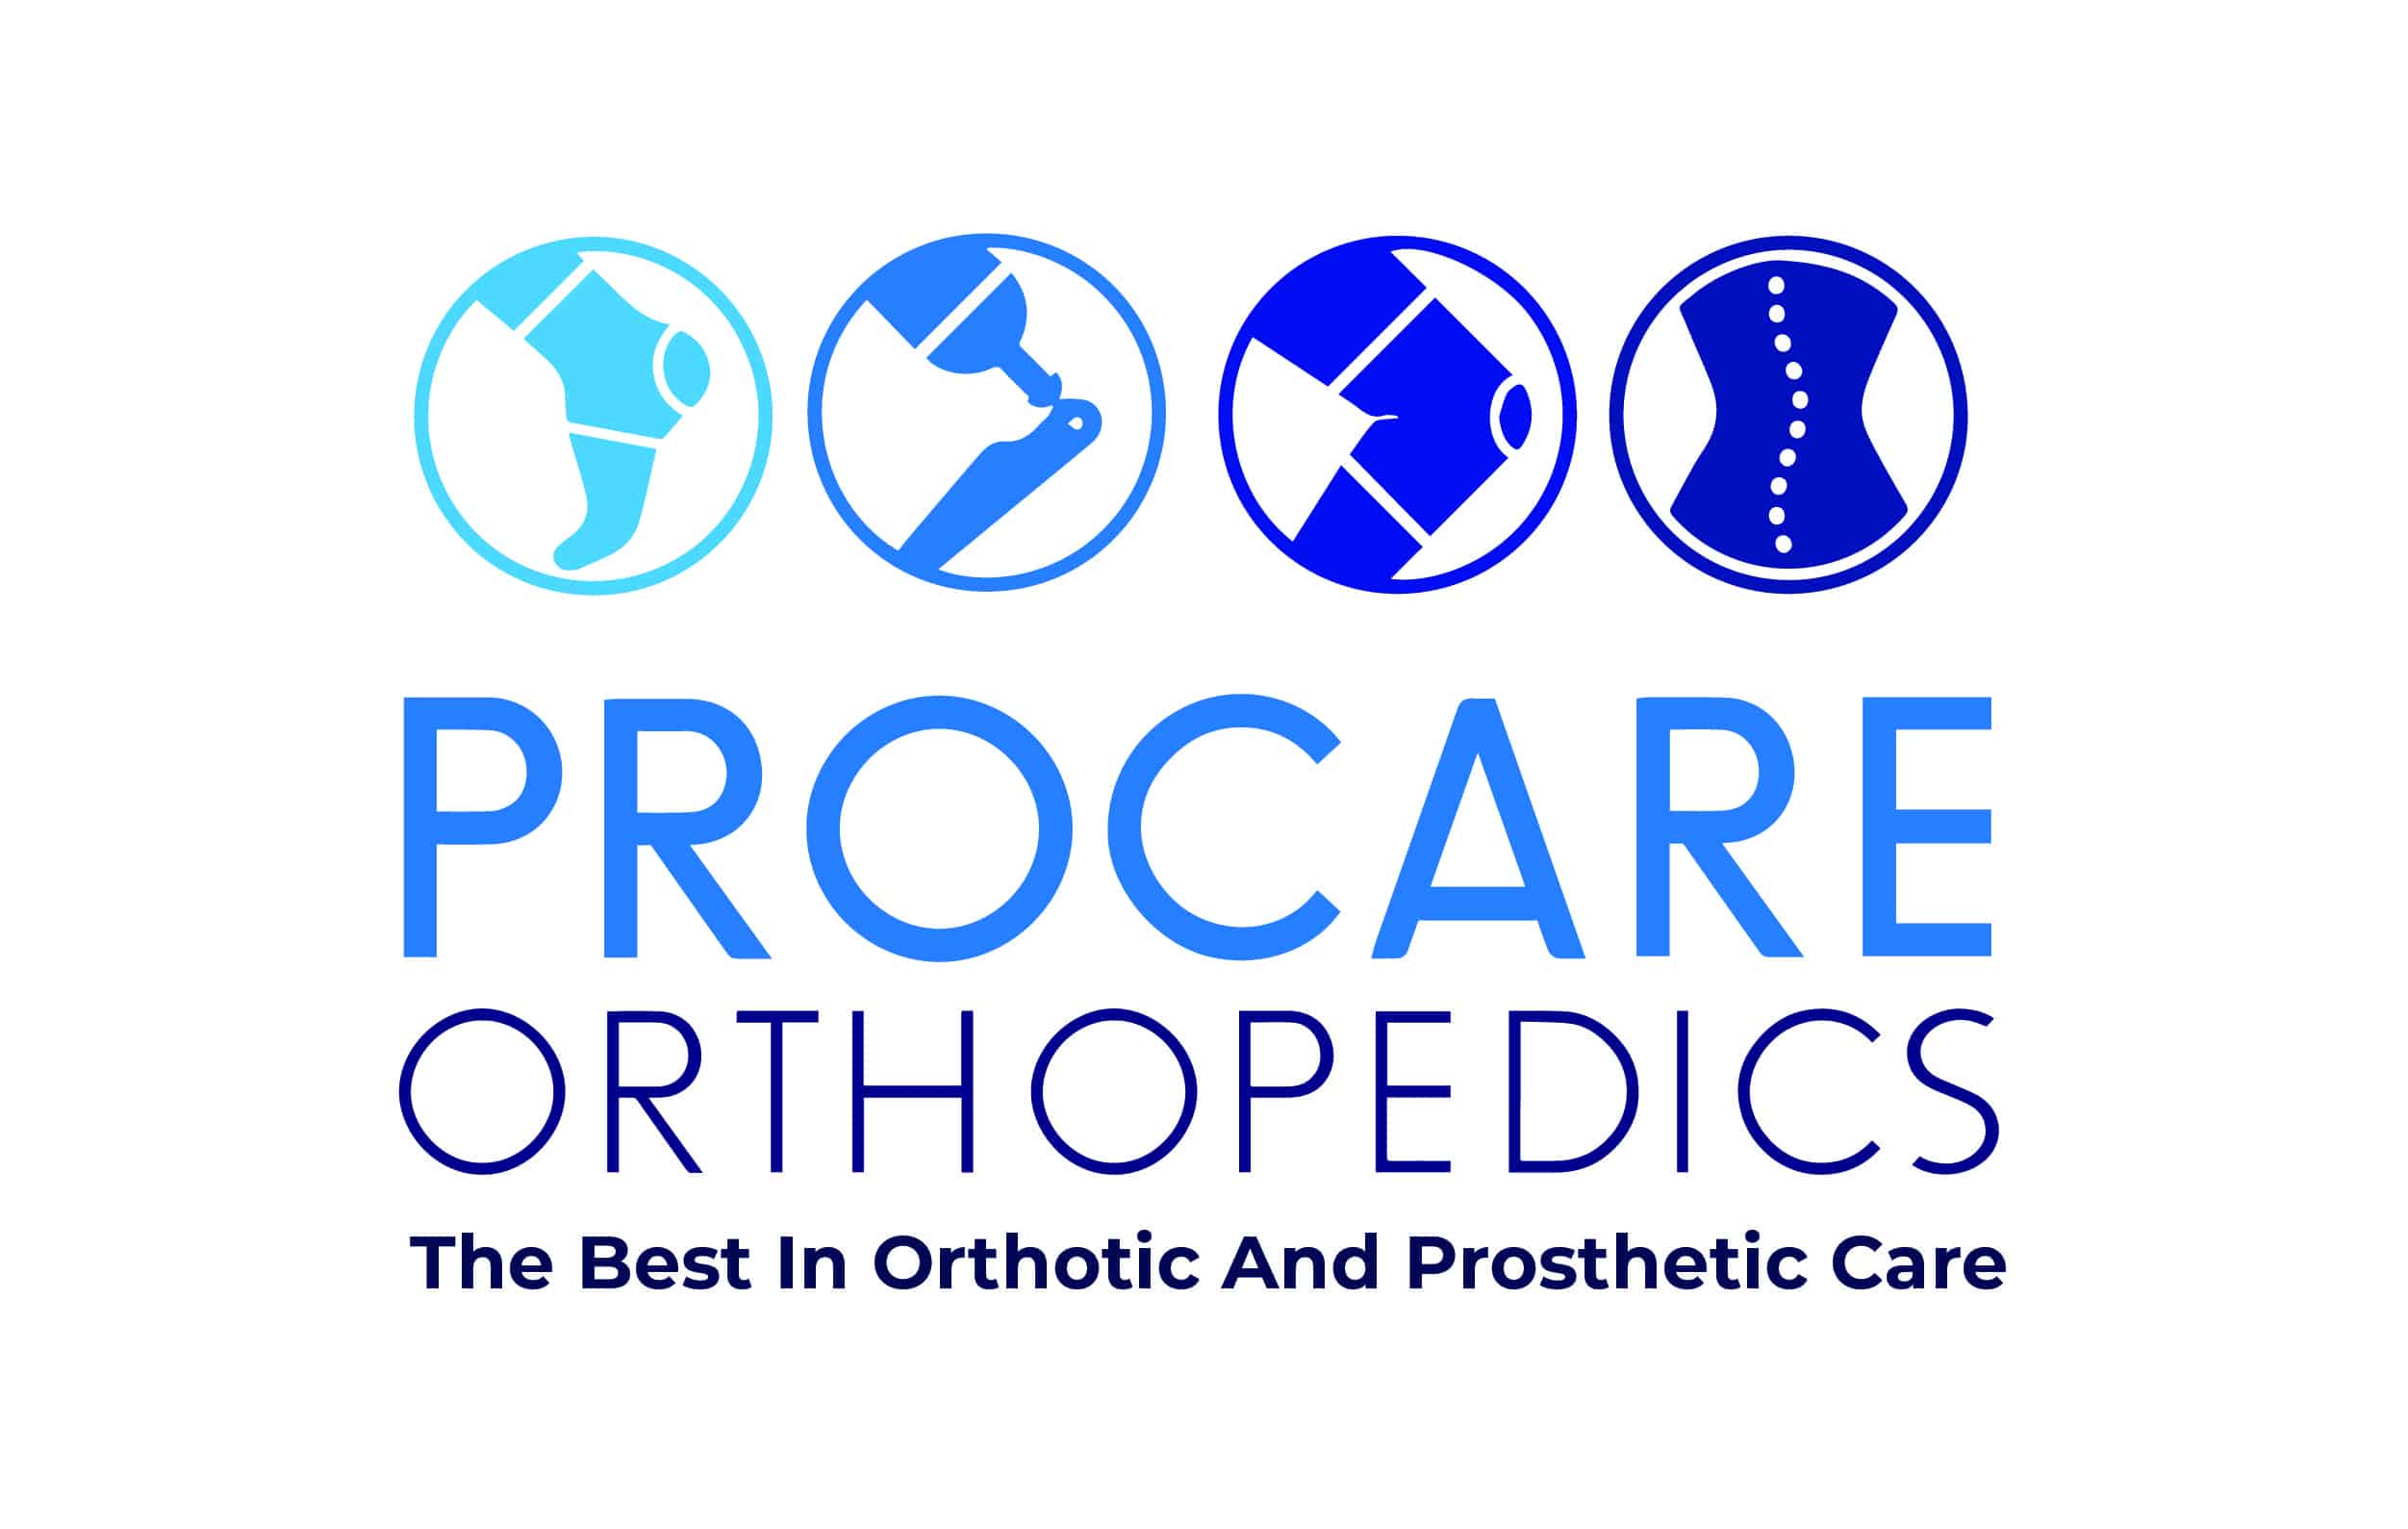 Procare Orthopedics